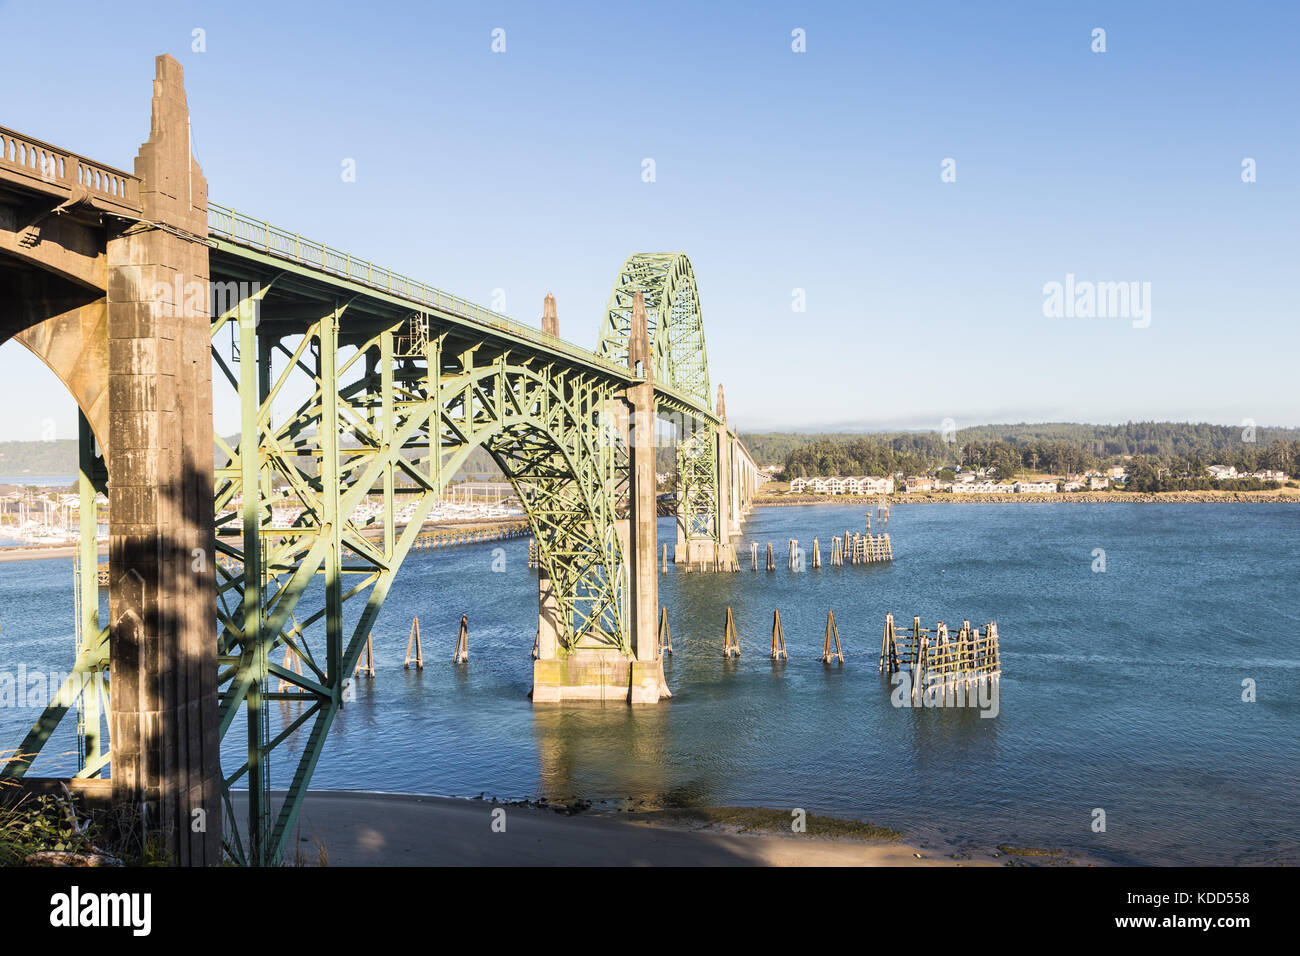 El puente de Newport, en el estado de Oregon, en la costa del Pacífico, en el noroeste de EE.UU. Esta es una parada a lo largo de la autopista 101 Foto de stock